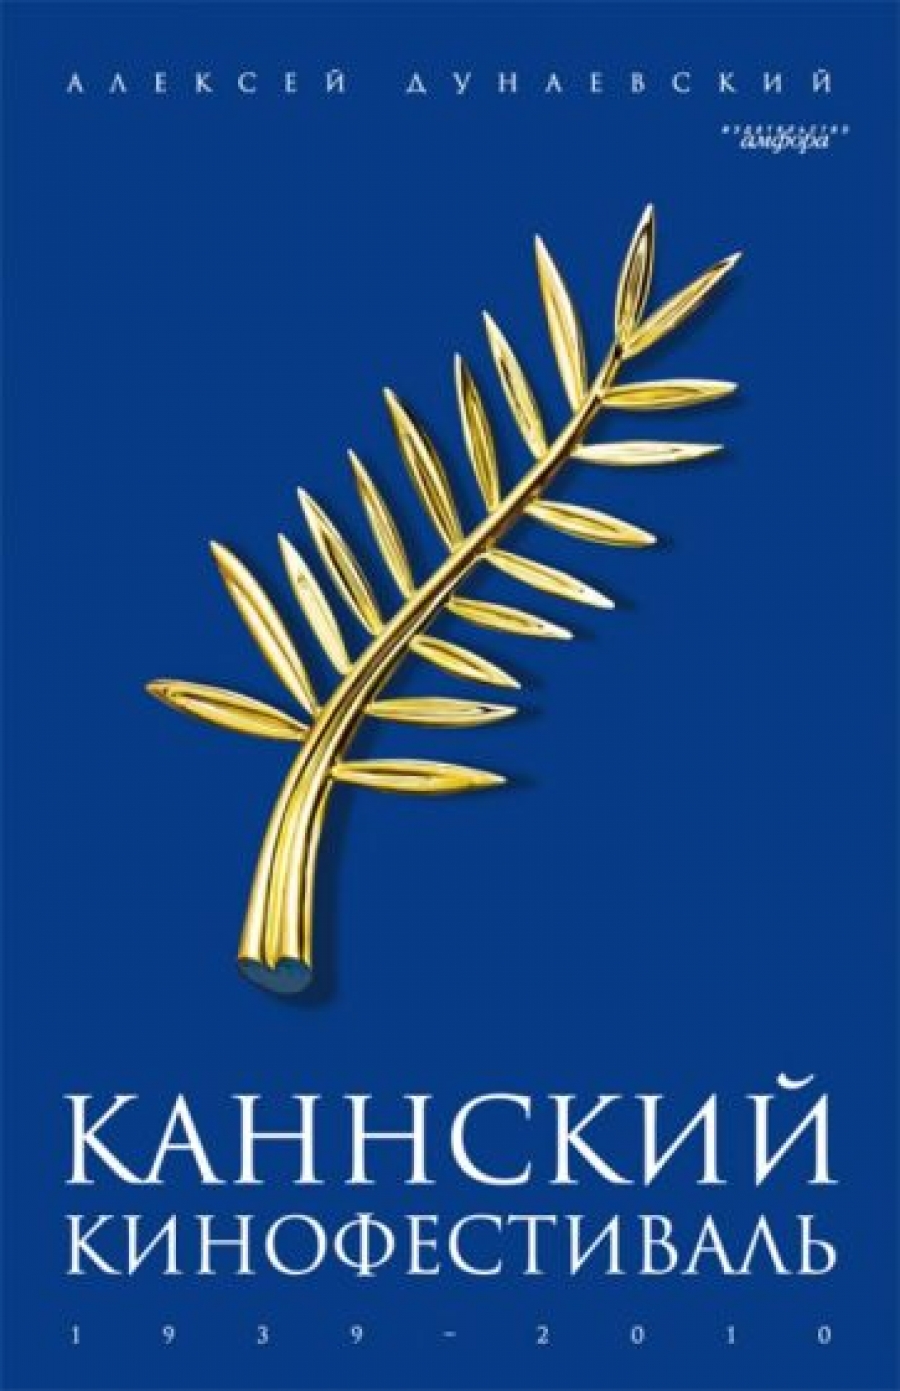      1939-2010 